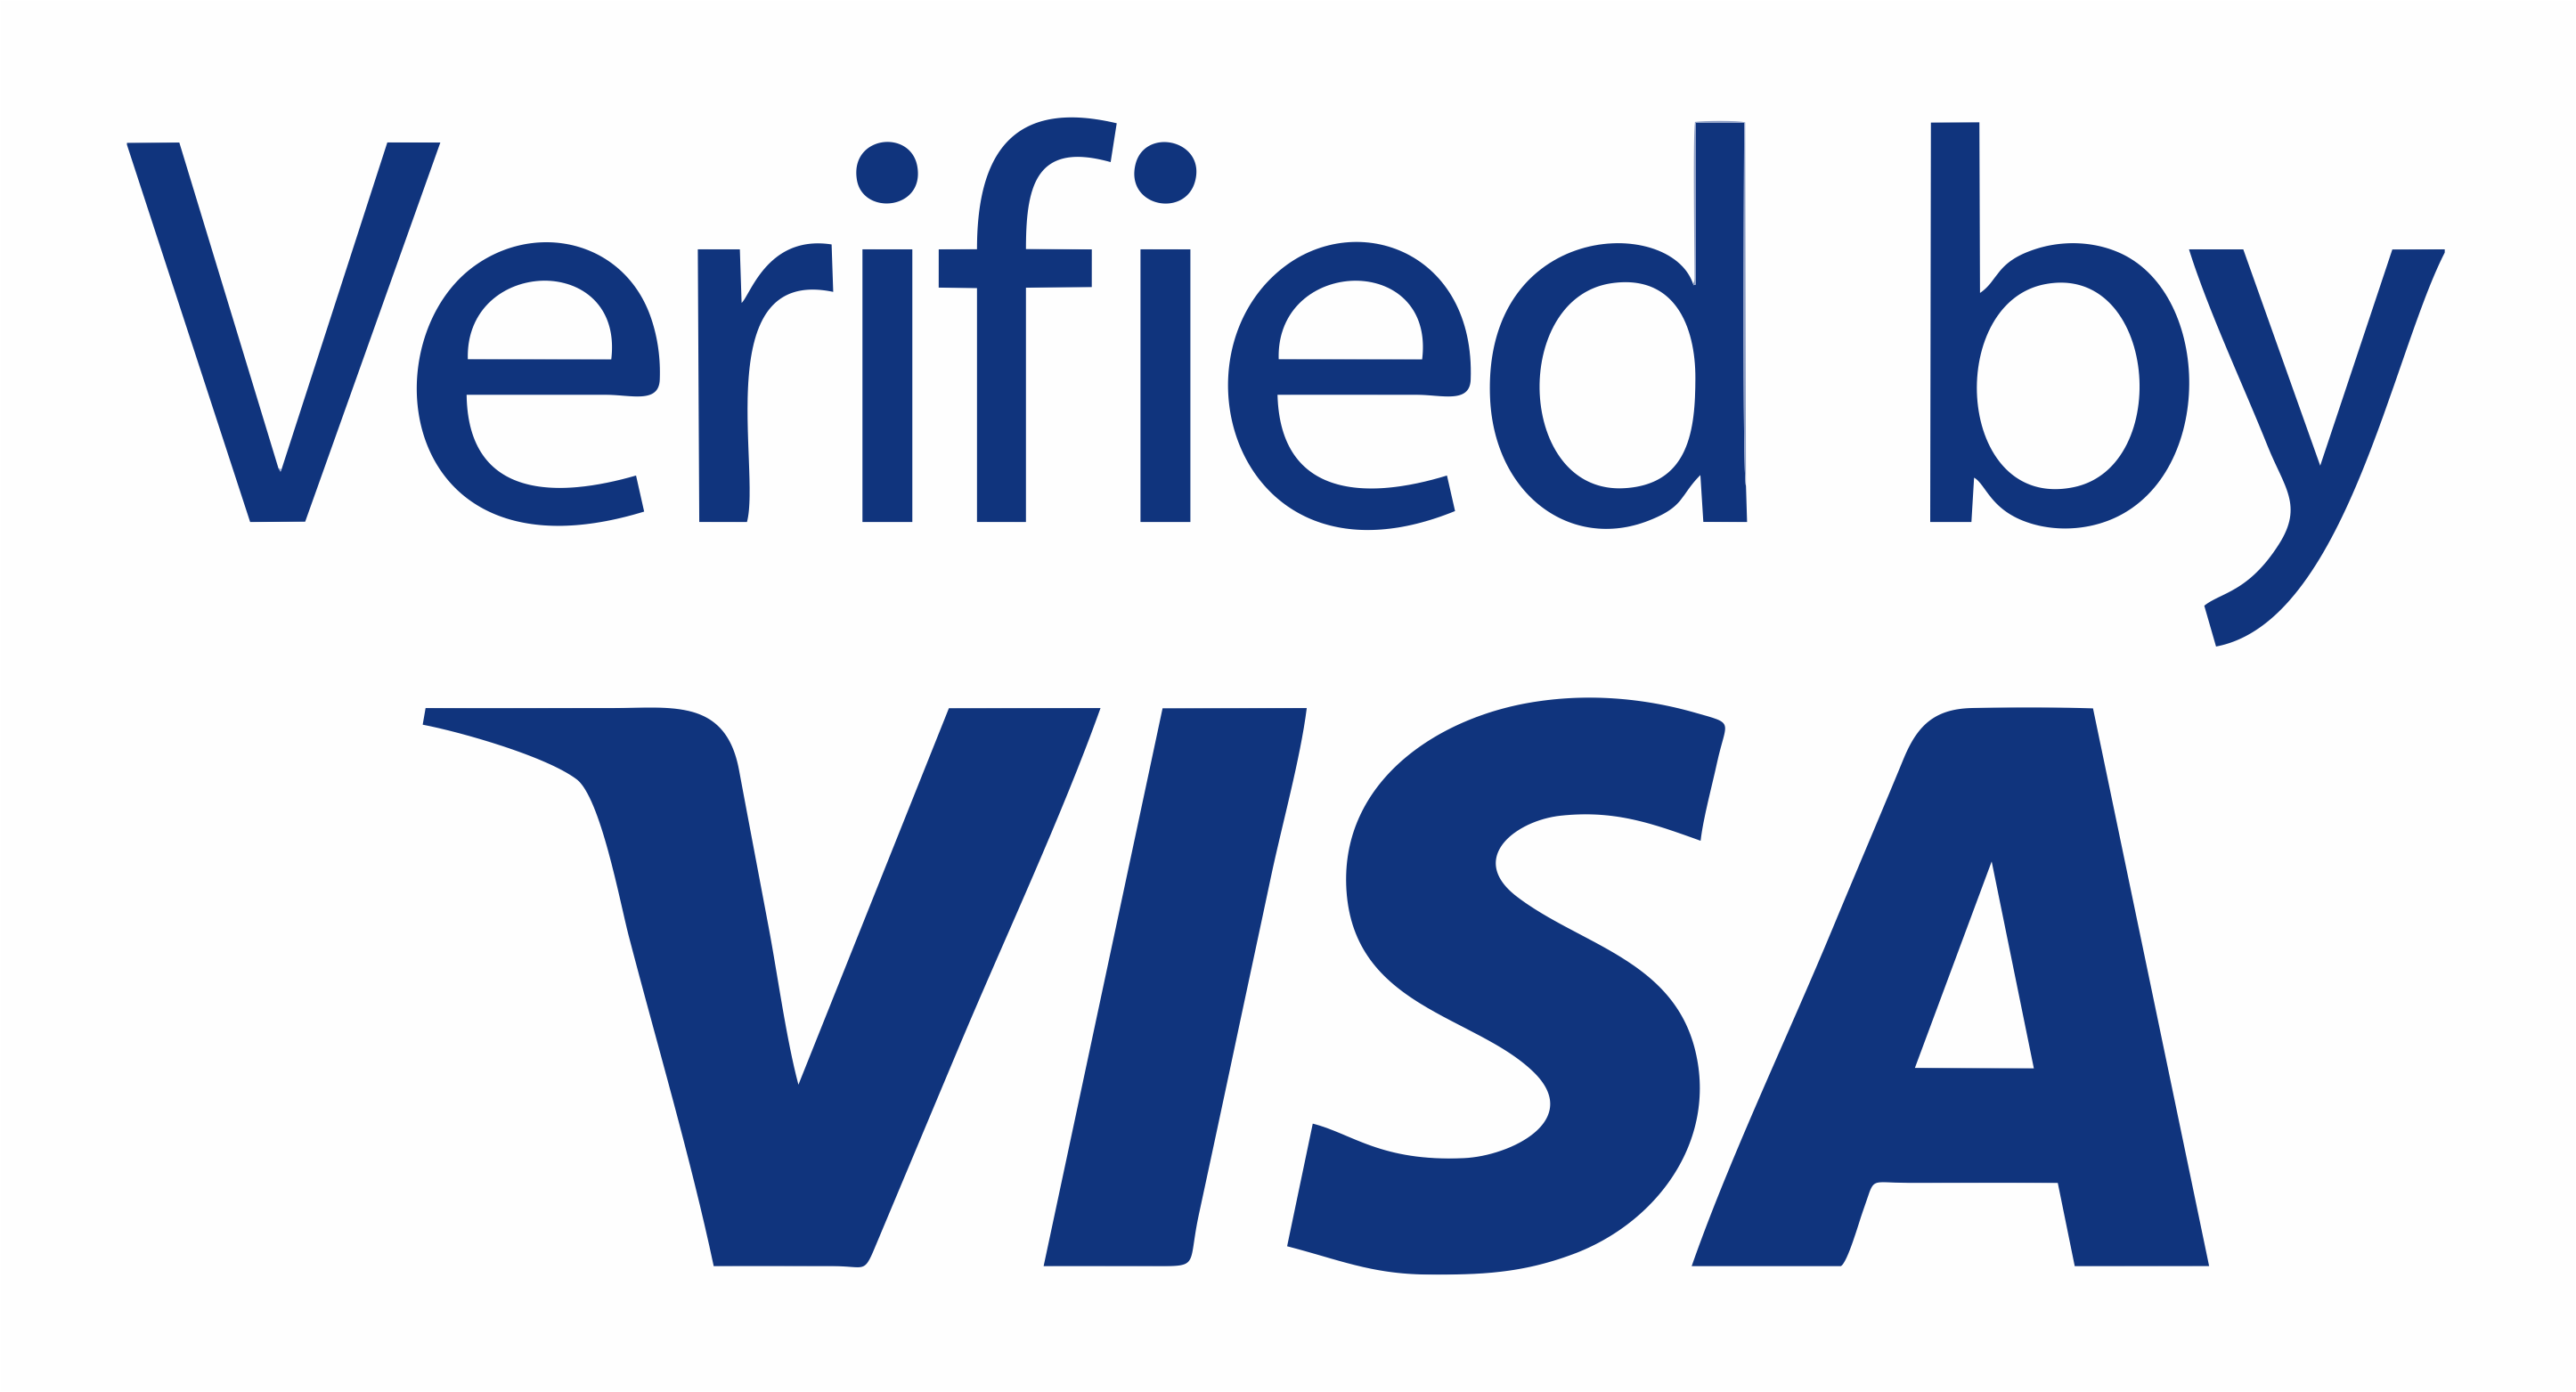 T me vbv pass. Verified by visa logo. Verified by visa svg. Verified by visa logo svg. Виза логотип без фона.